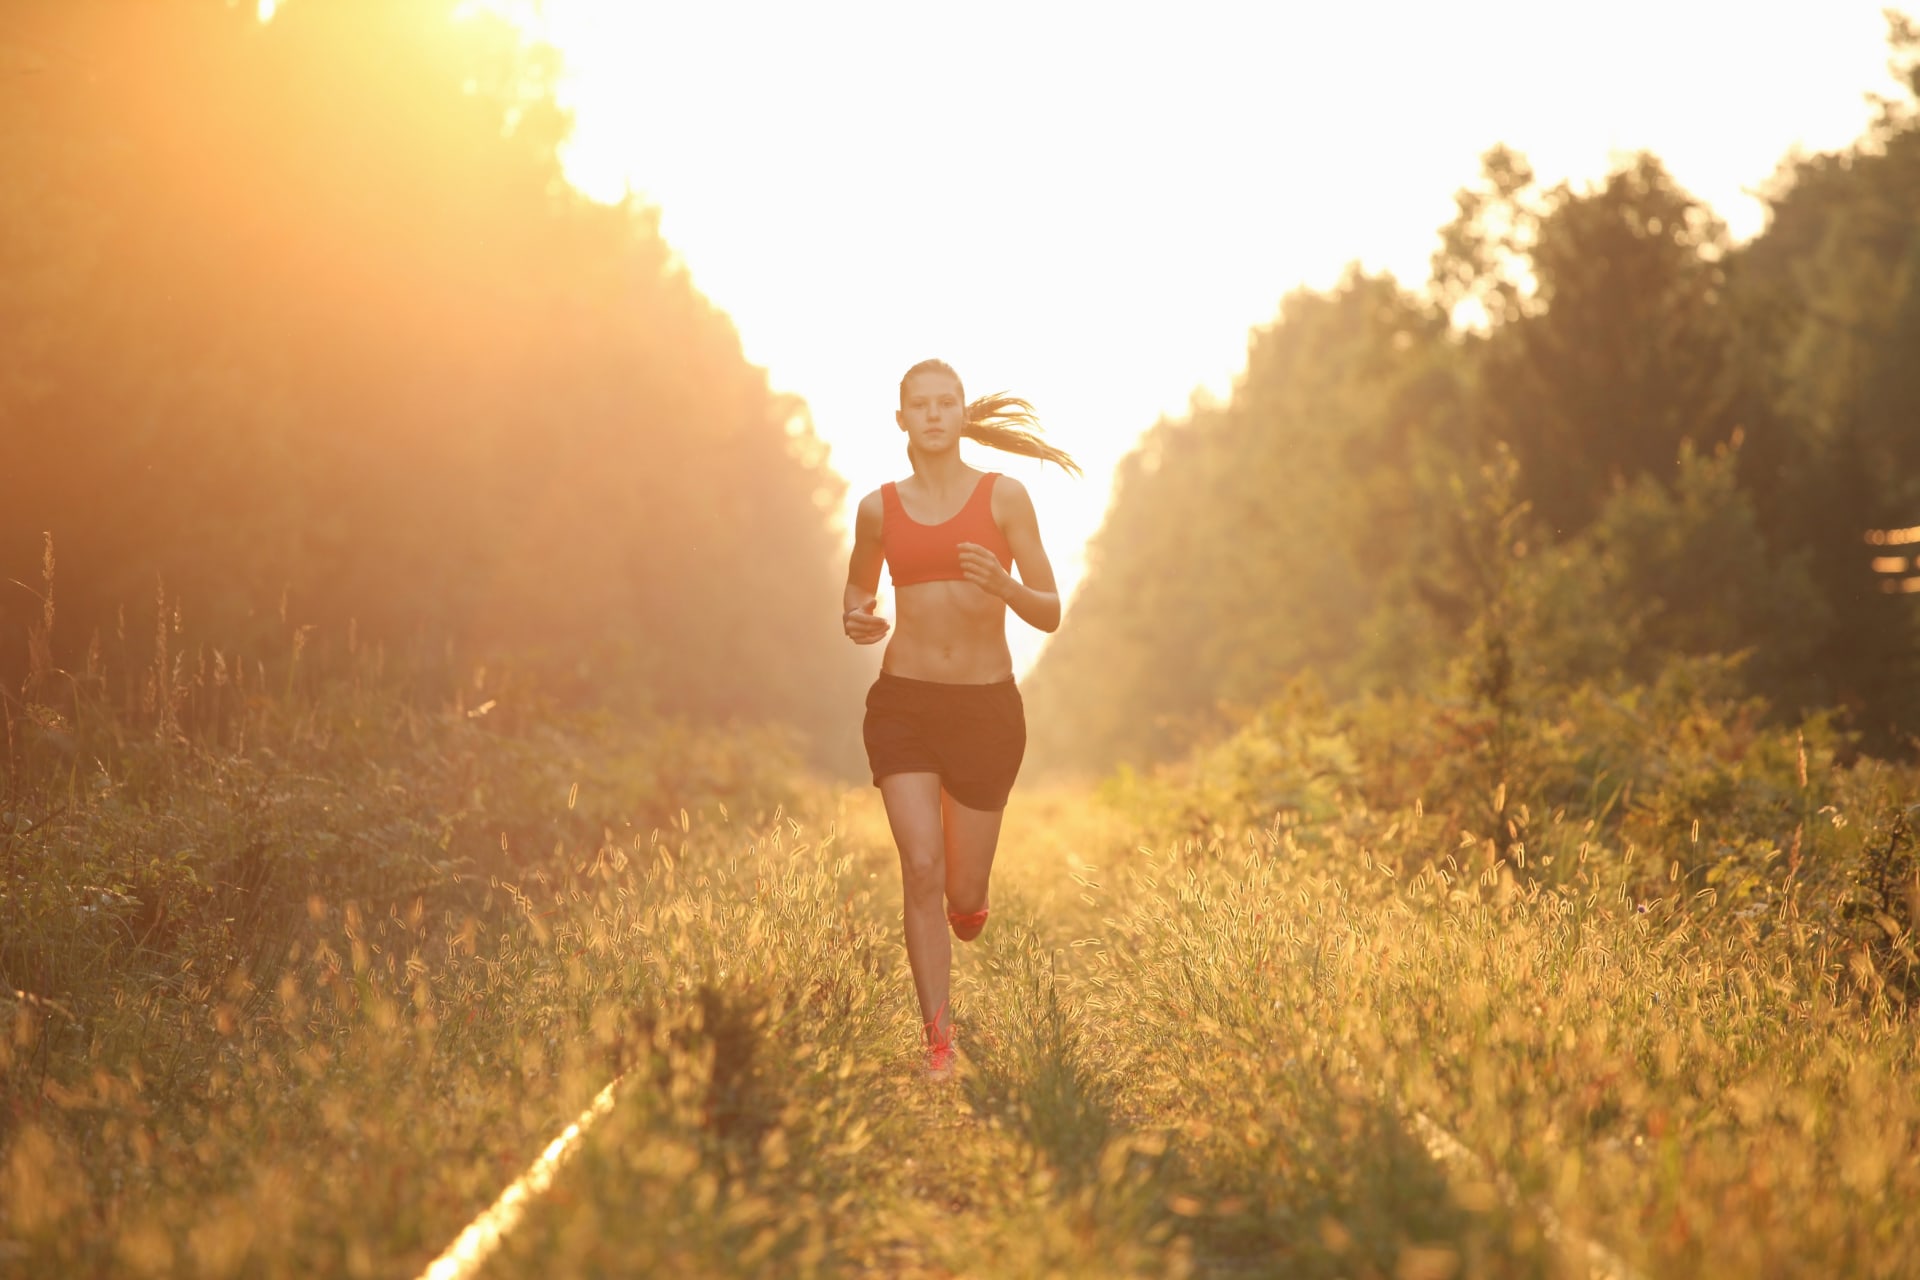 Pokud se lidé rozhodnou hubnout, měli by začít pozvolna. Nemusí do cvičení okamžitě zařadit běh na pět kilometrů za den, stačí svižnější chůze nebo delší procházka. 